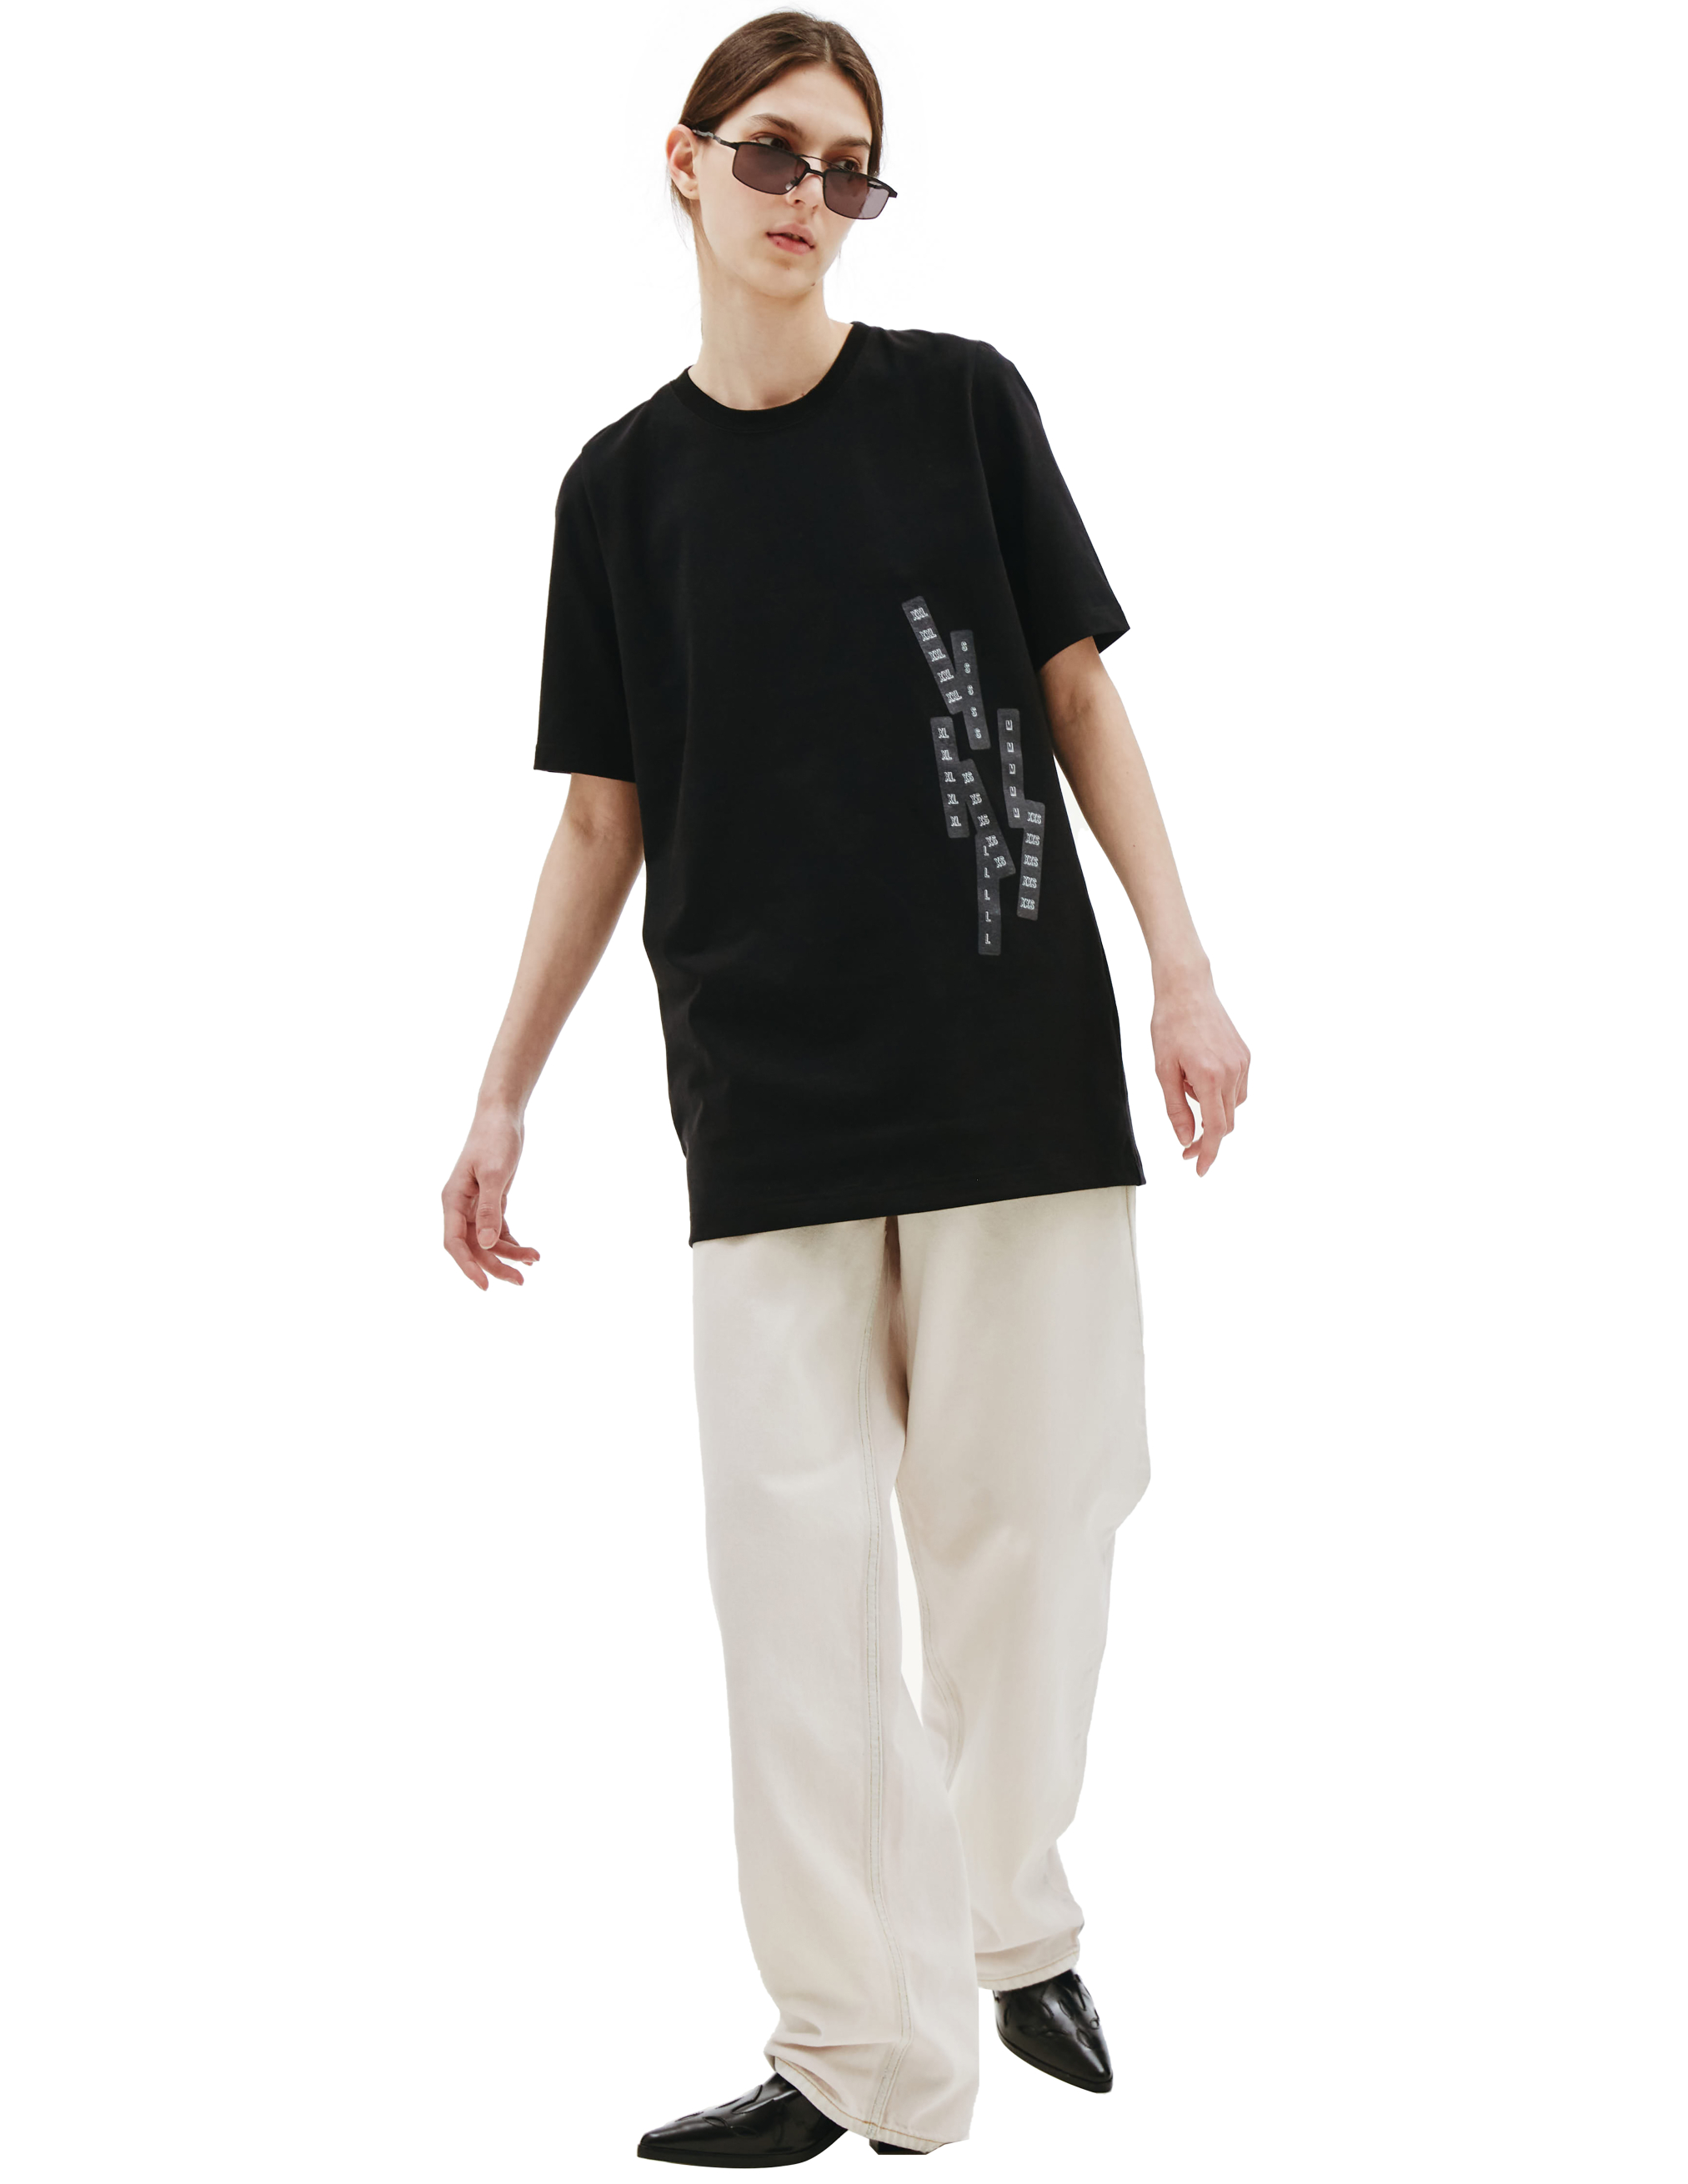 Черная футболка с графичным принтом Doublet 22SS06CS217/black, размер One Size